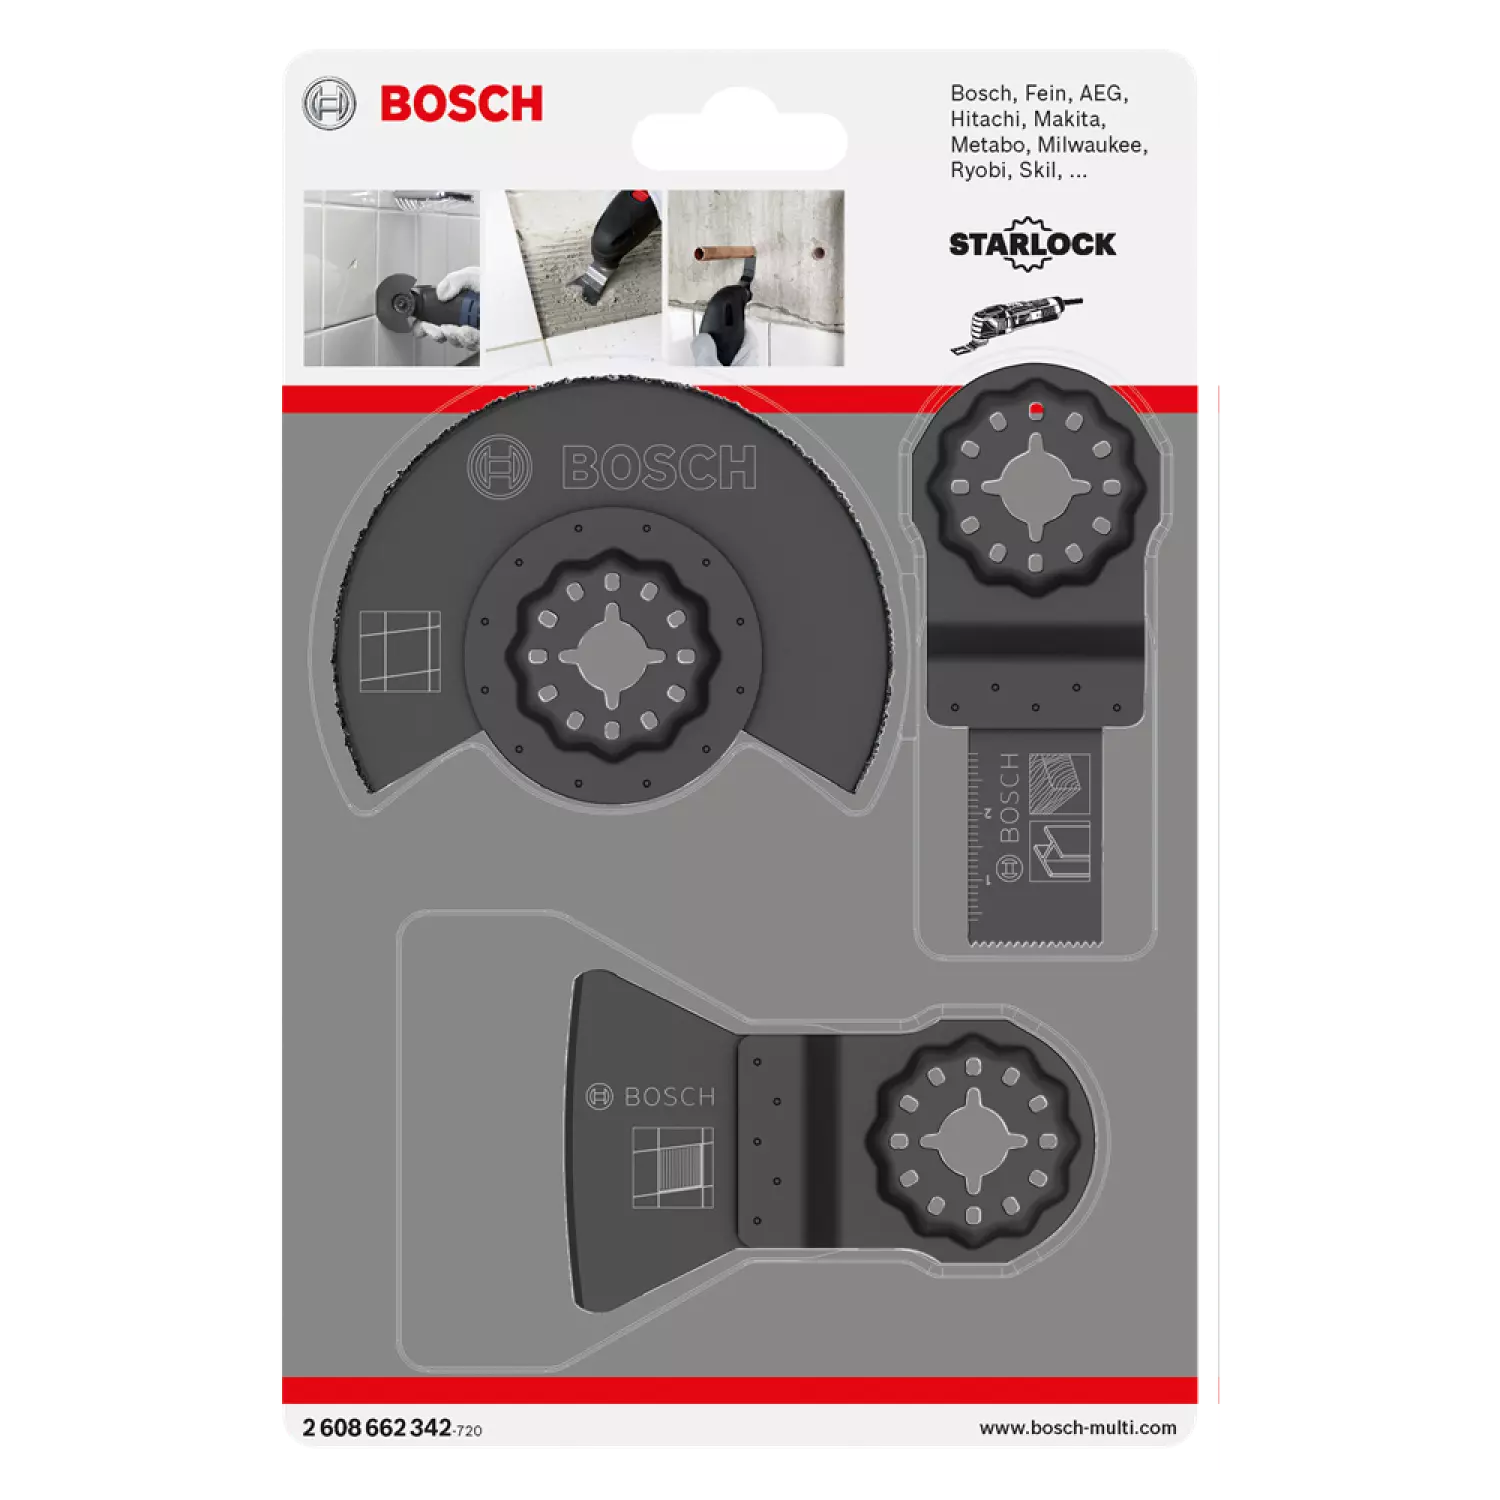 Bosch 2608662342 - Set 3 pièces Starlock Basic Tile ACZ 85 MT4, AIZ 20 AB, ATZ 52 SC